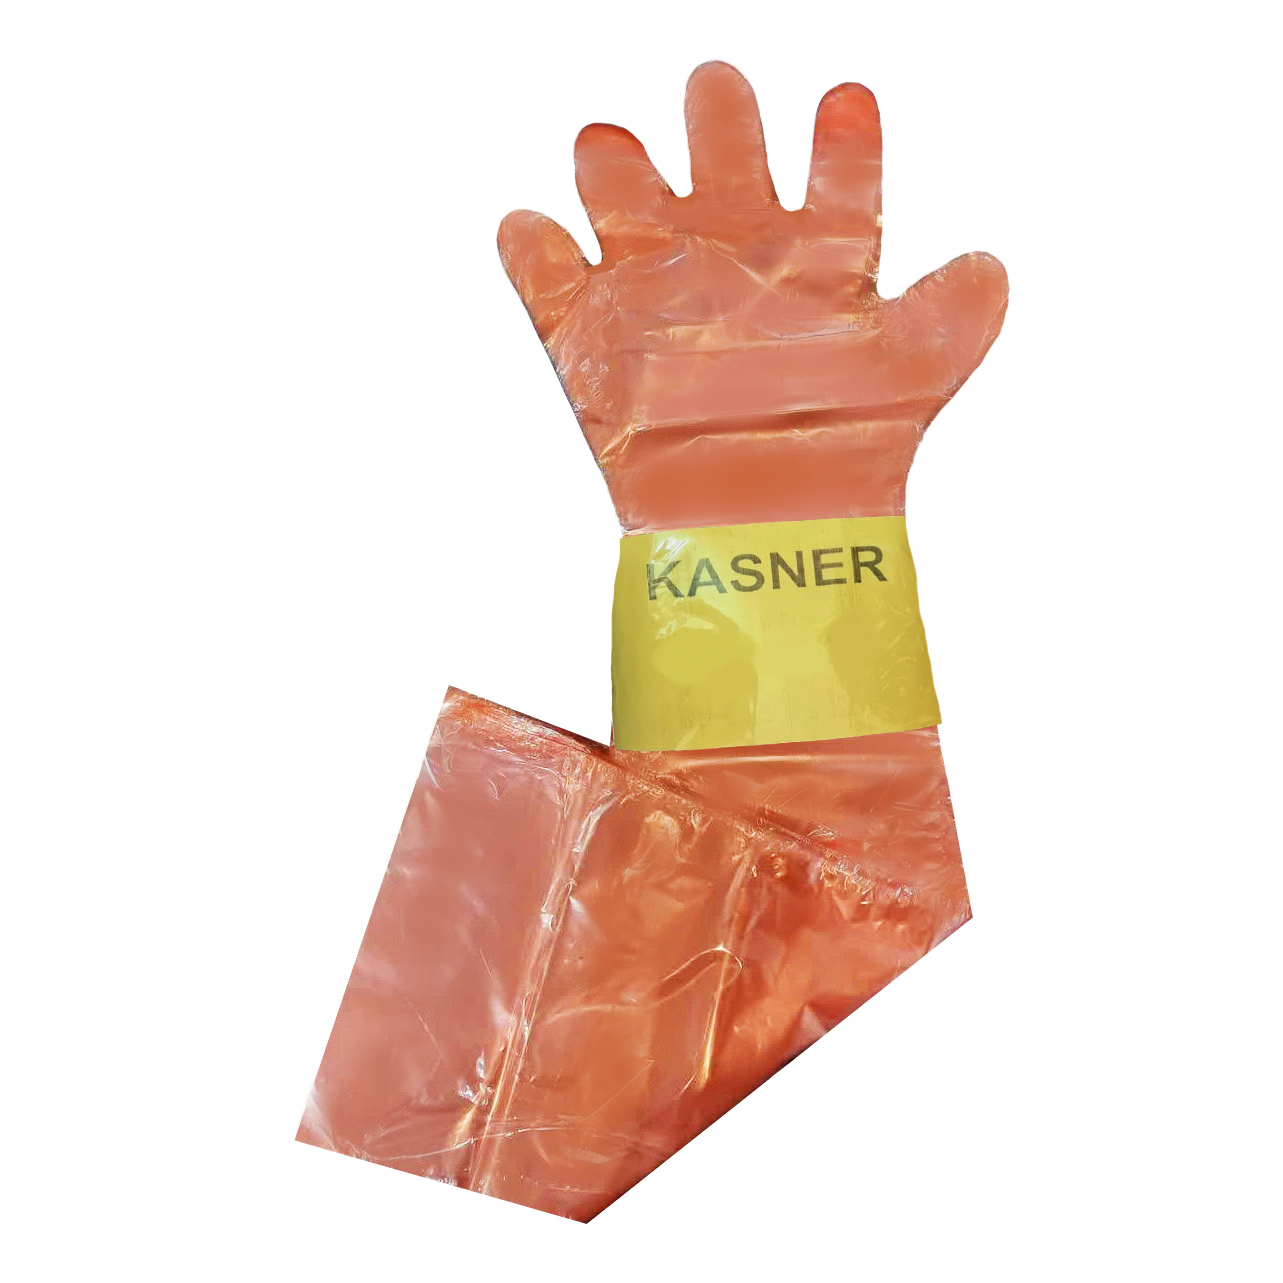 دستکش نظافت یکبار مصرف کاسنر مدل ساقه بلند کد K95 بسته 28 عددی